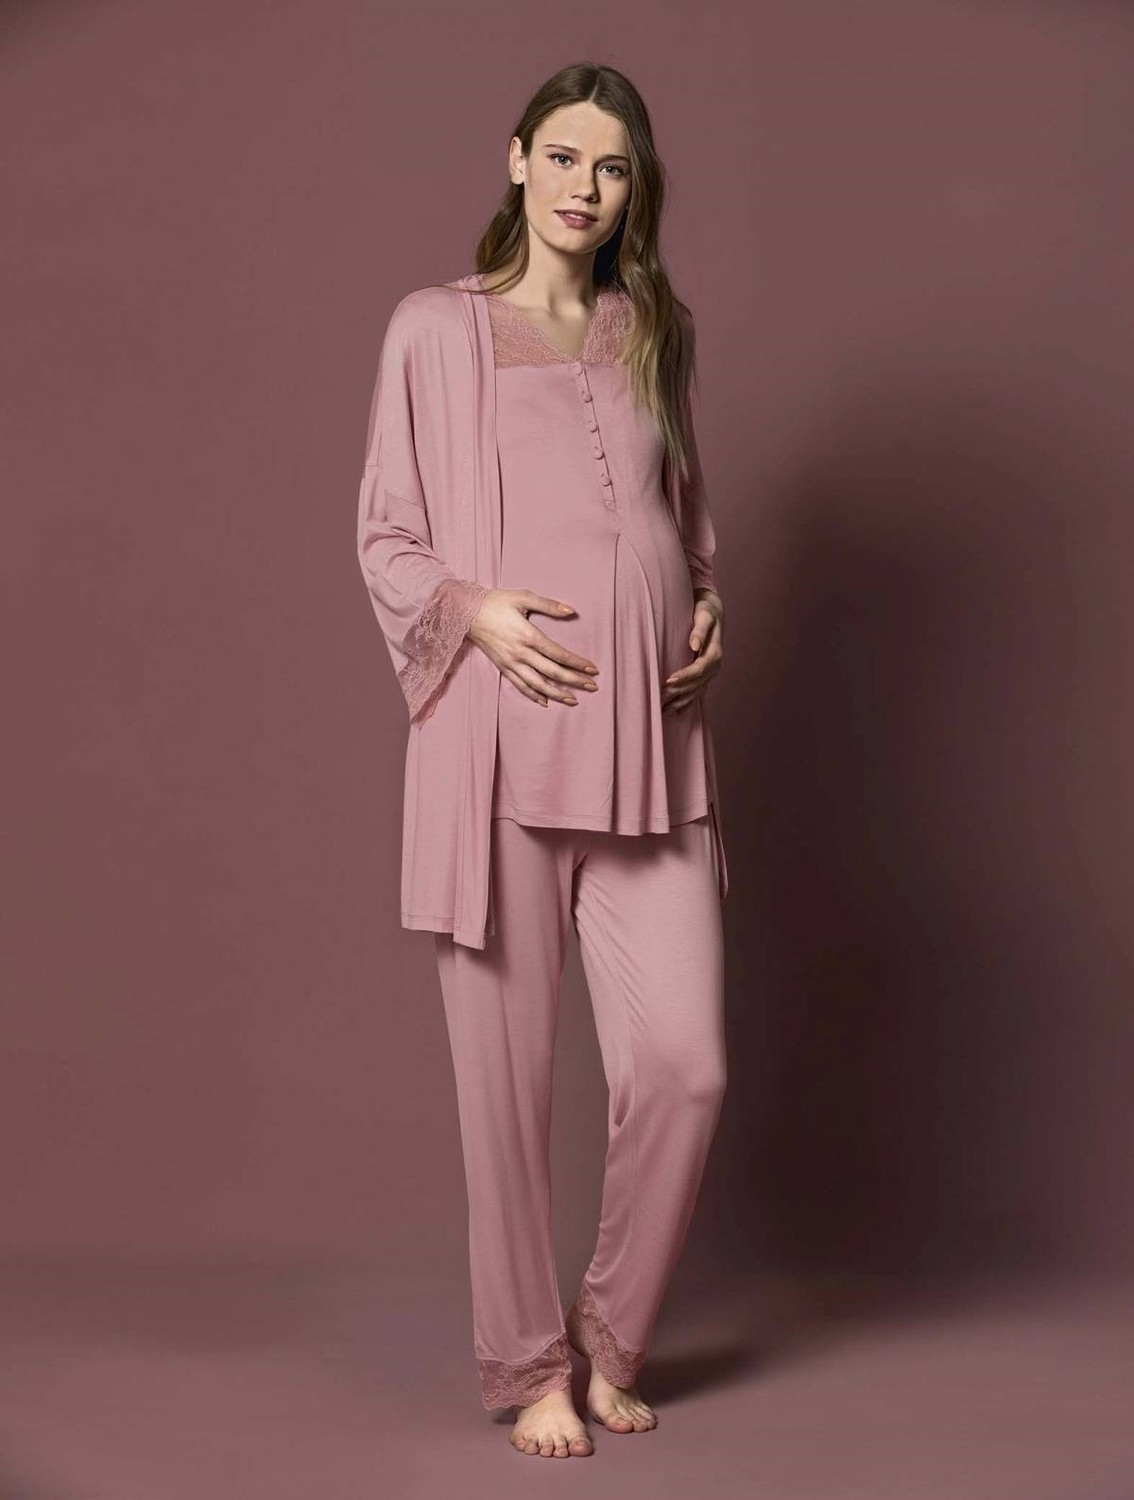 Пижамный комплект Monamise 19217 для беременных после родов - Розовый